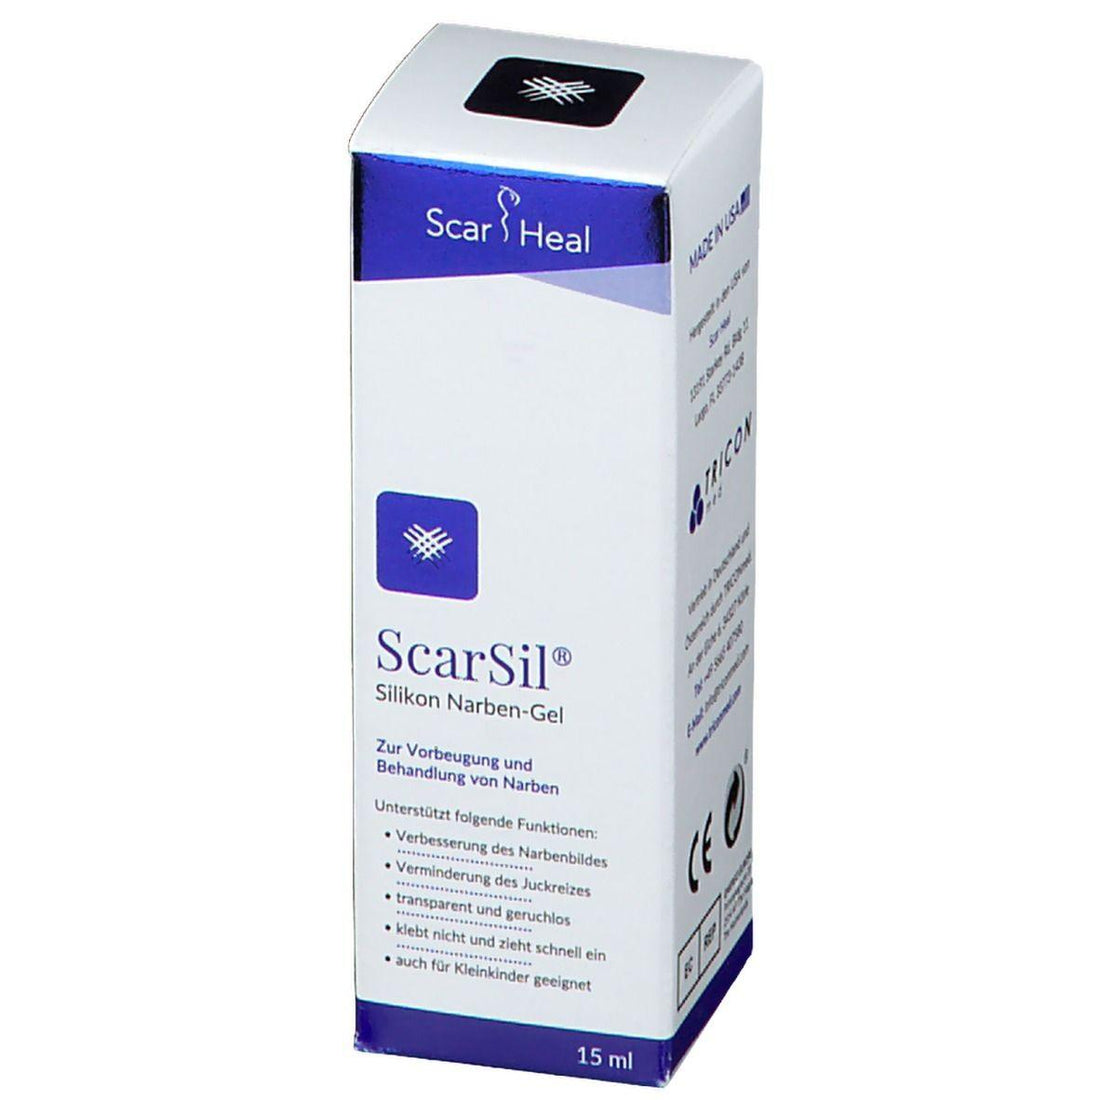 ScarSil Scar Gel 15ml - Rightangled